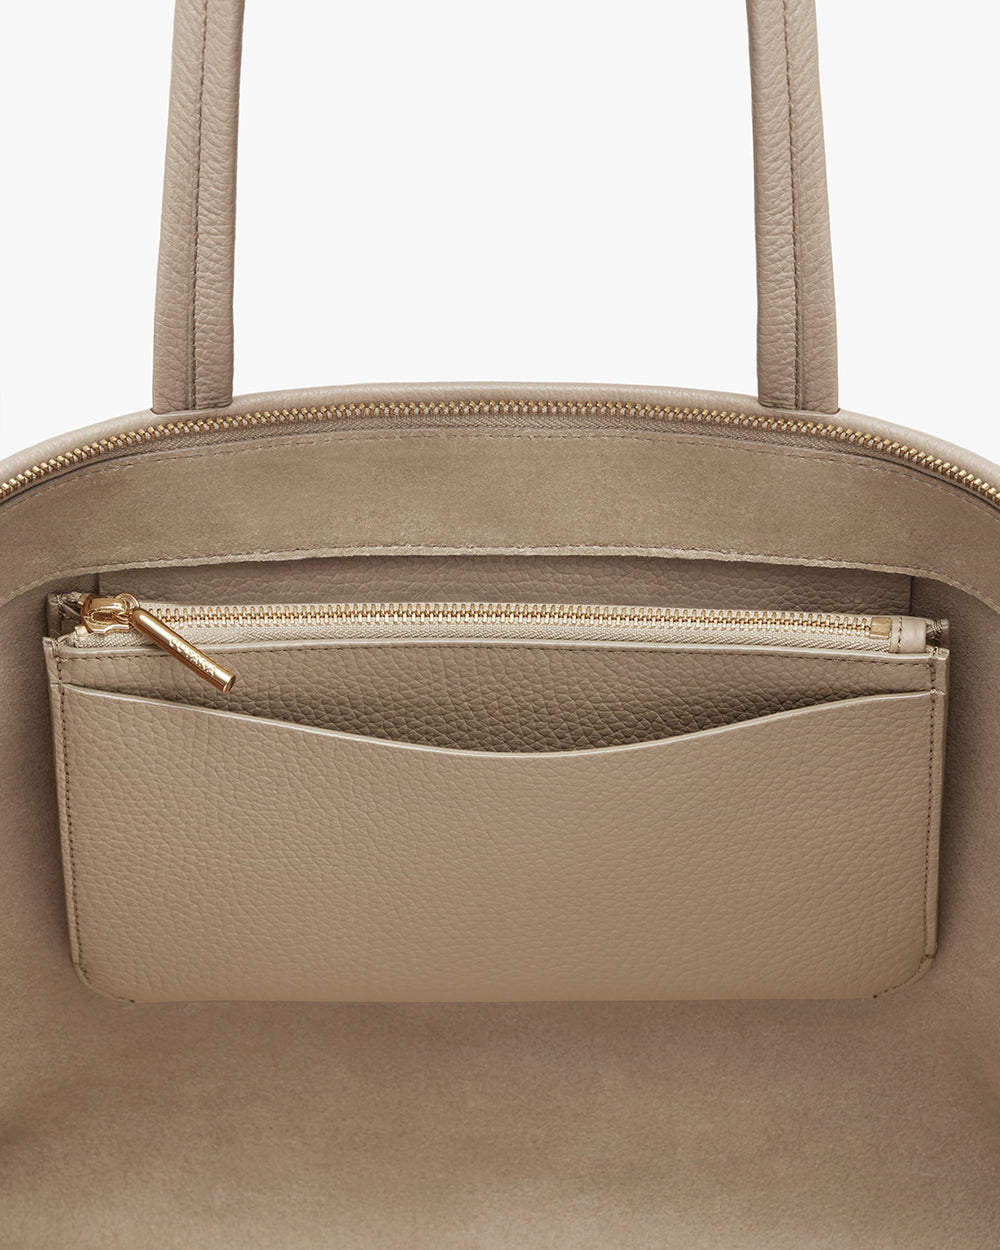 Close-up of a handbag with a zipper pocket on the exterior.